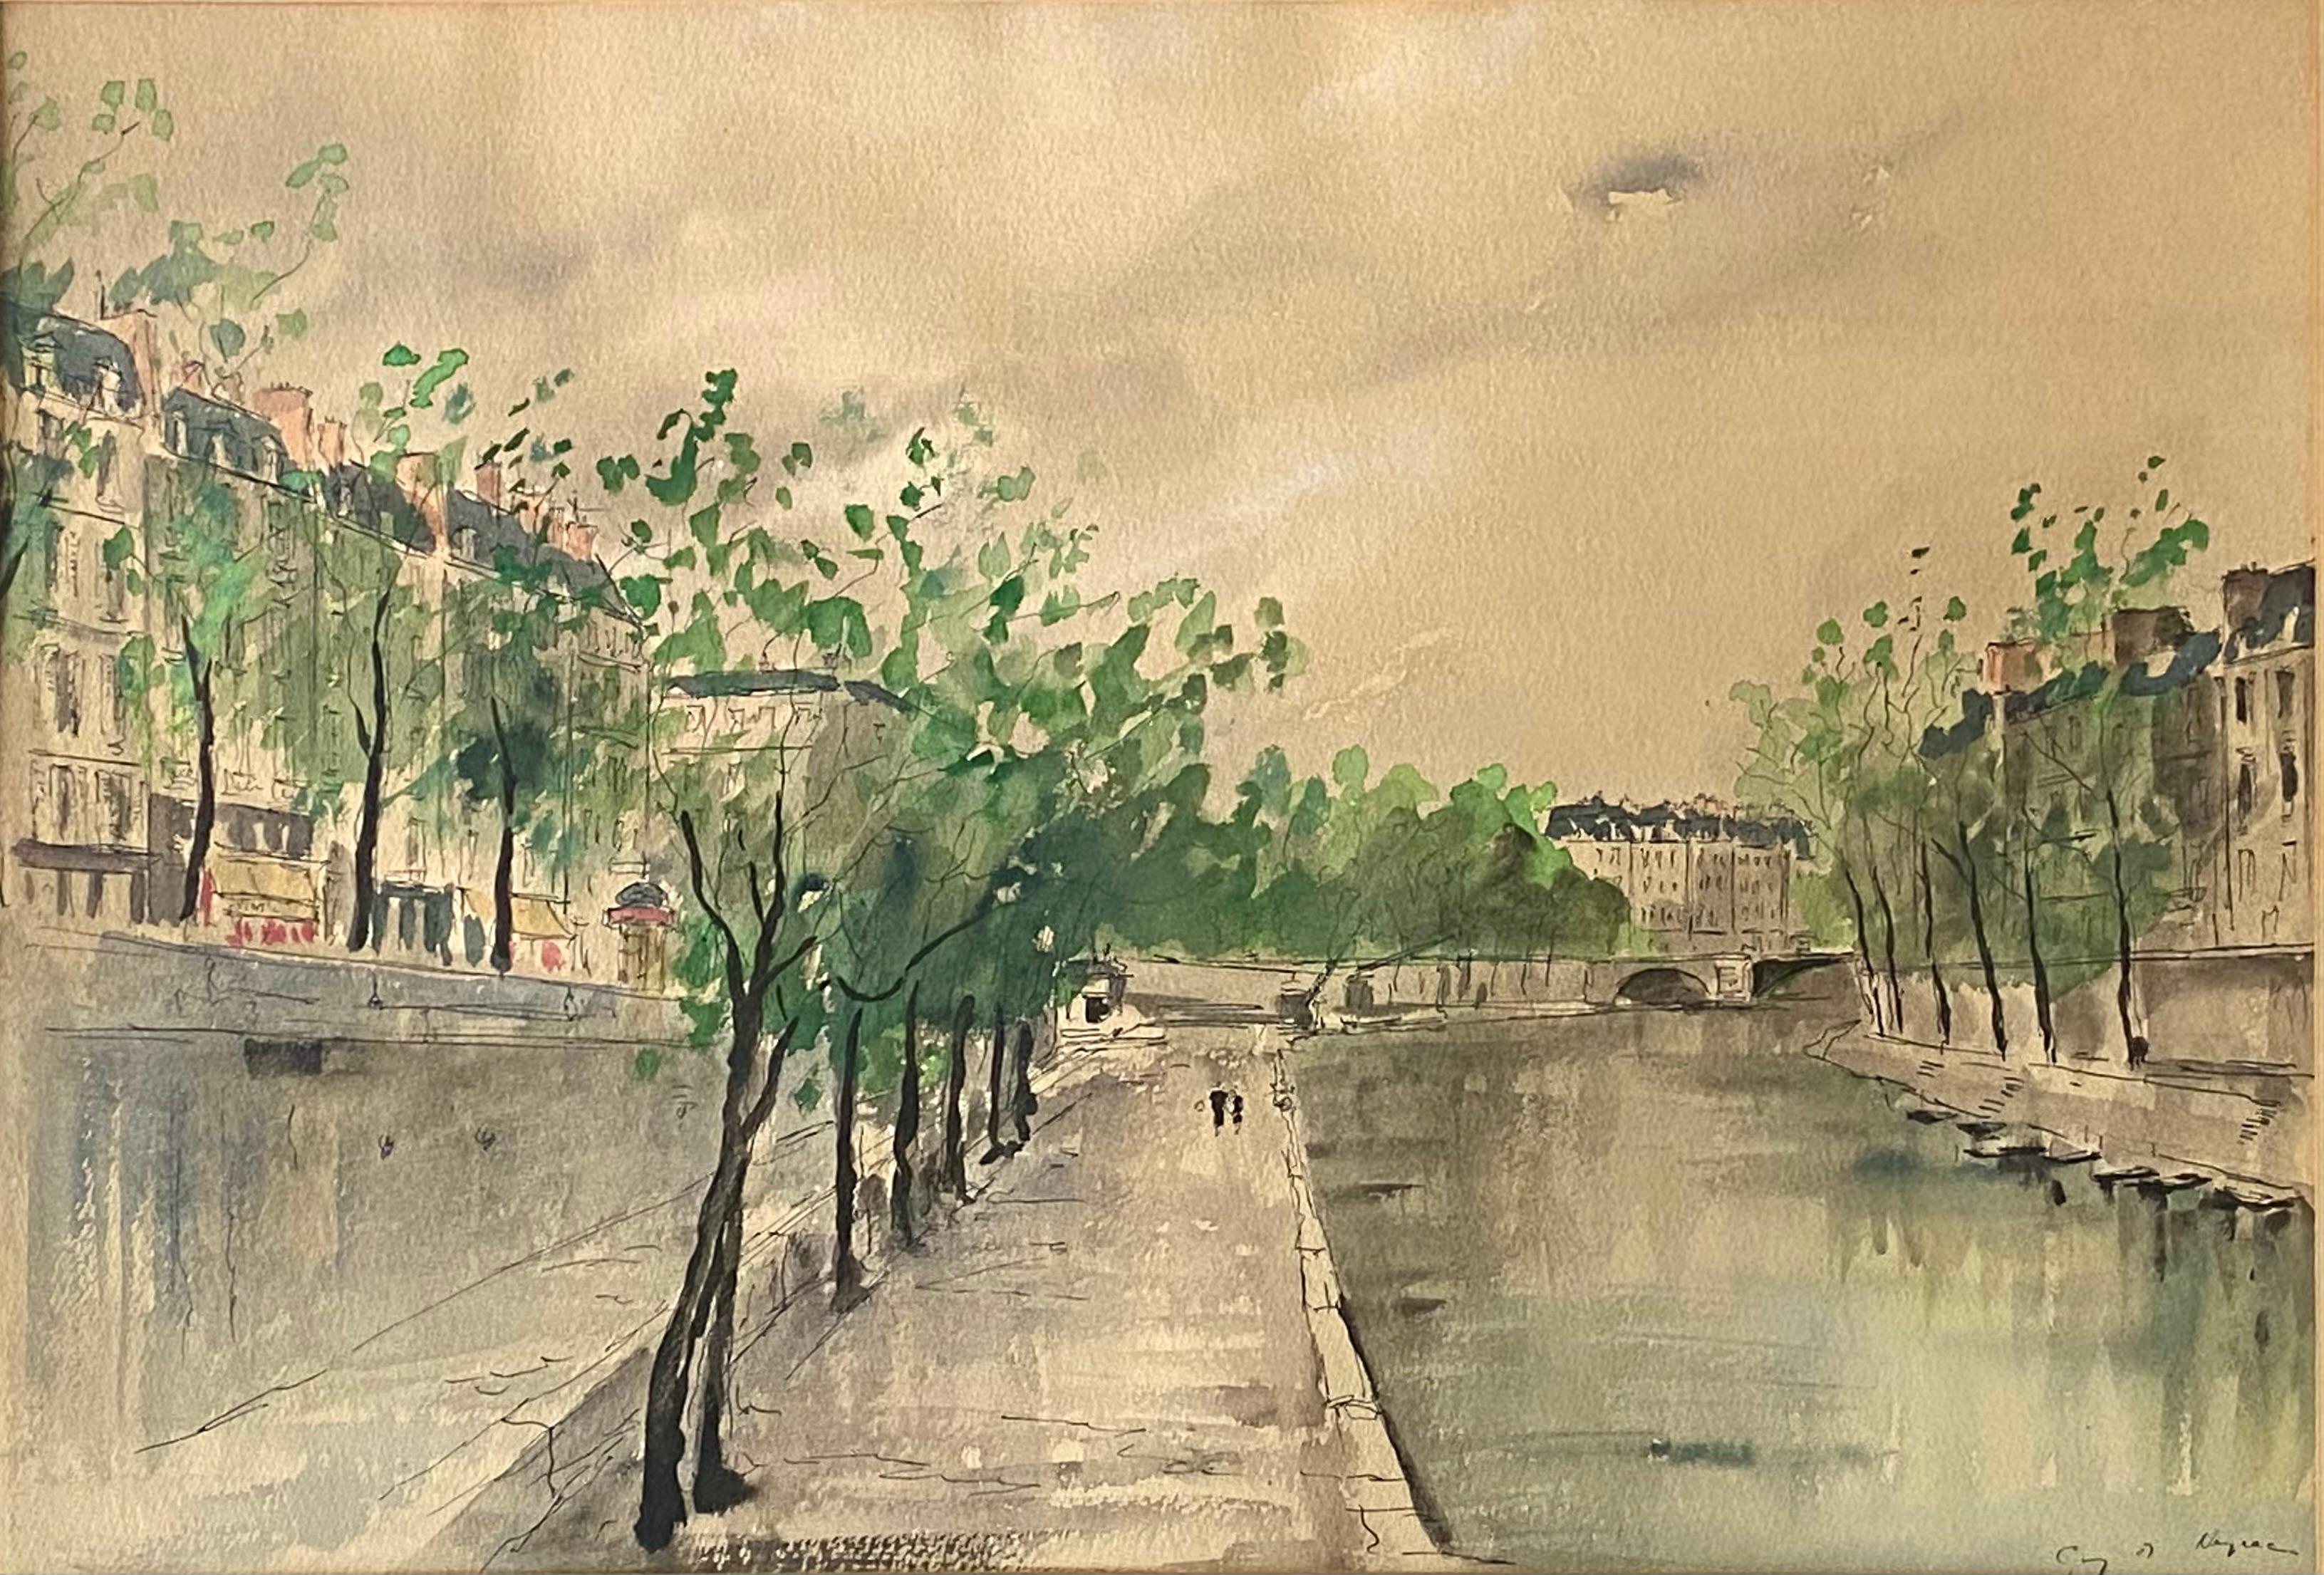 Guy de Neyrac Landscape Art - “Strolling along the Seine, Paris”